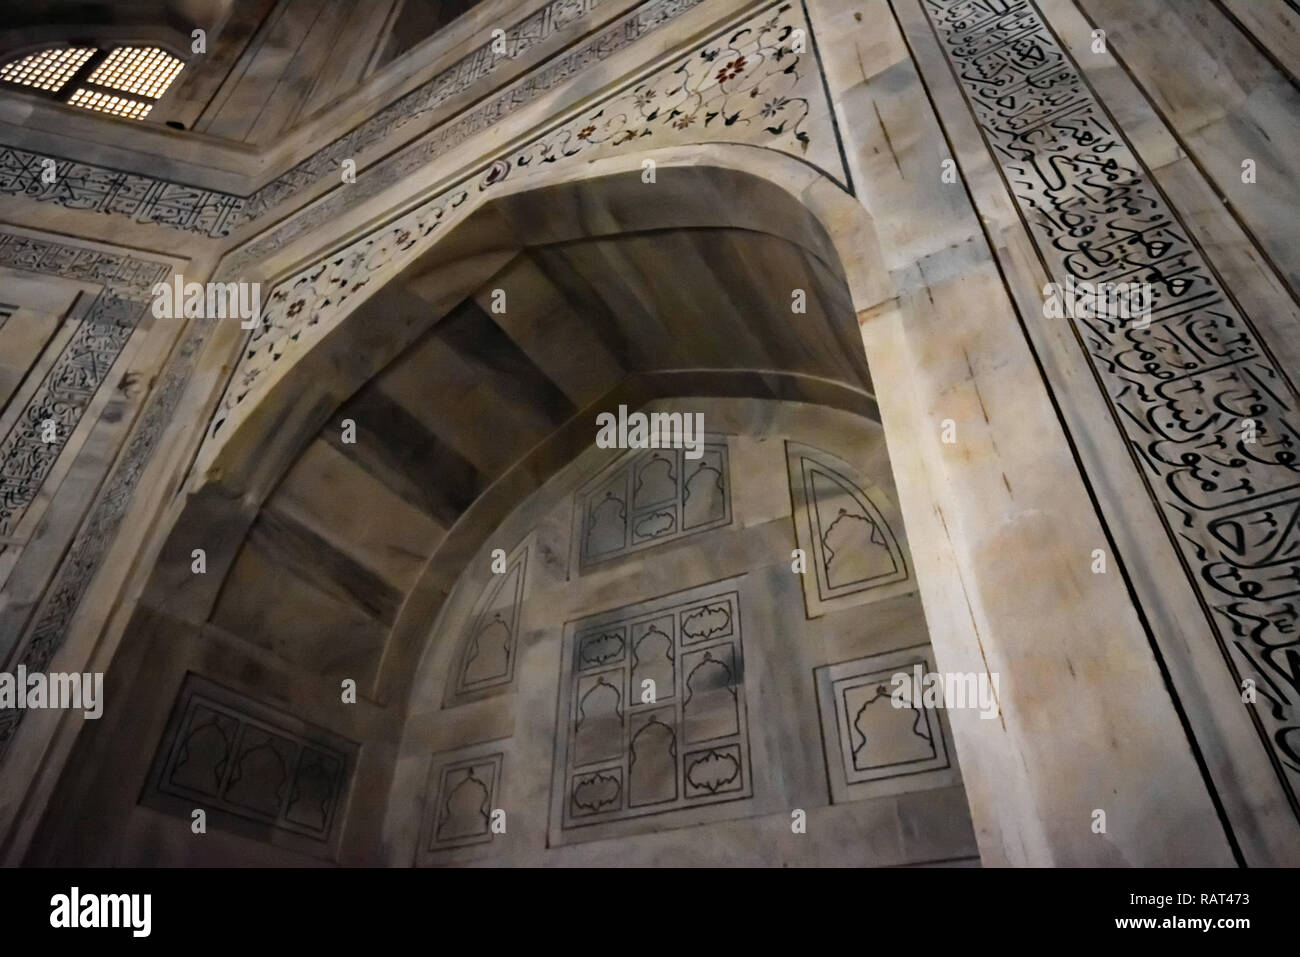 AGRA, INDE - Novembre 8, 2017 : l'intérieur du mausolée Taj Mahal à Agra, Inde Banque D'Images